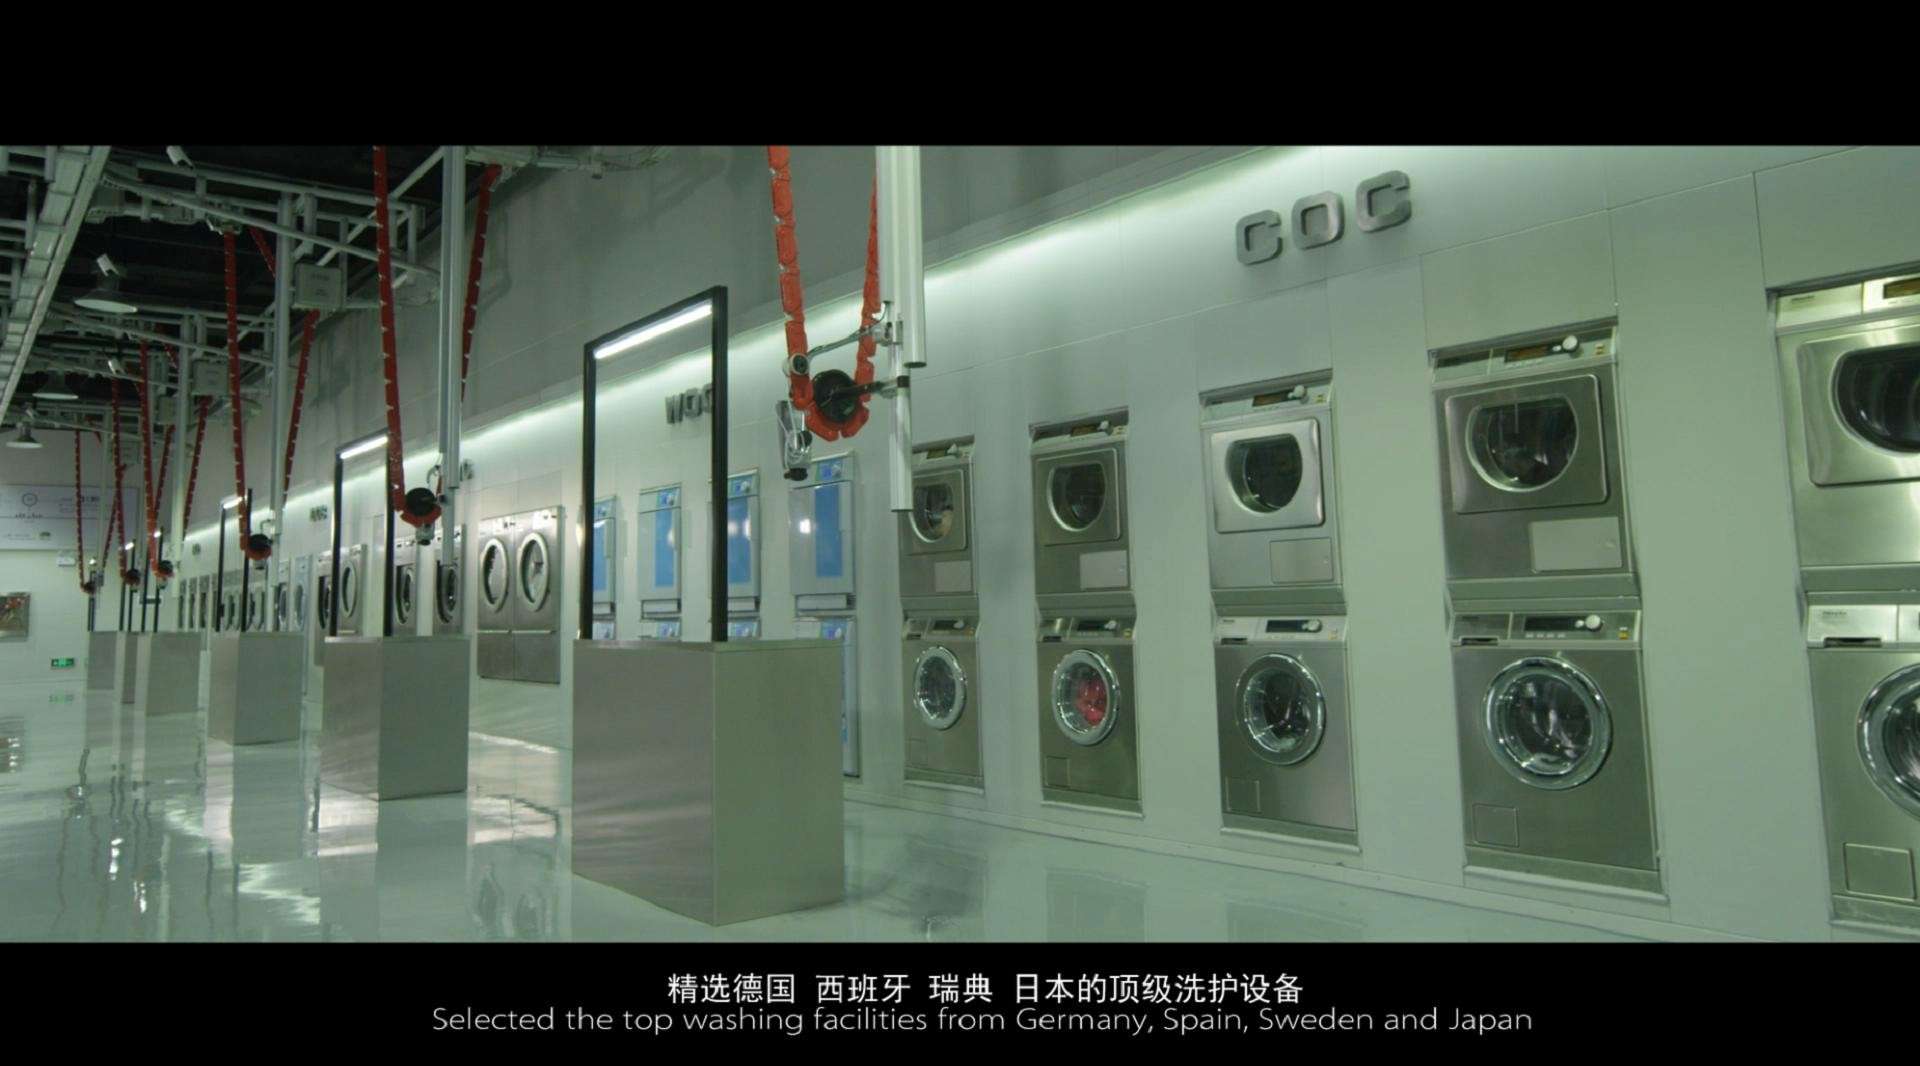 亚洲最先进的洗护工厂 7s洗护工厂